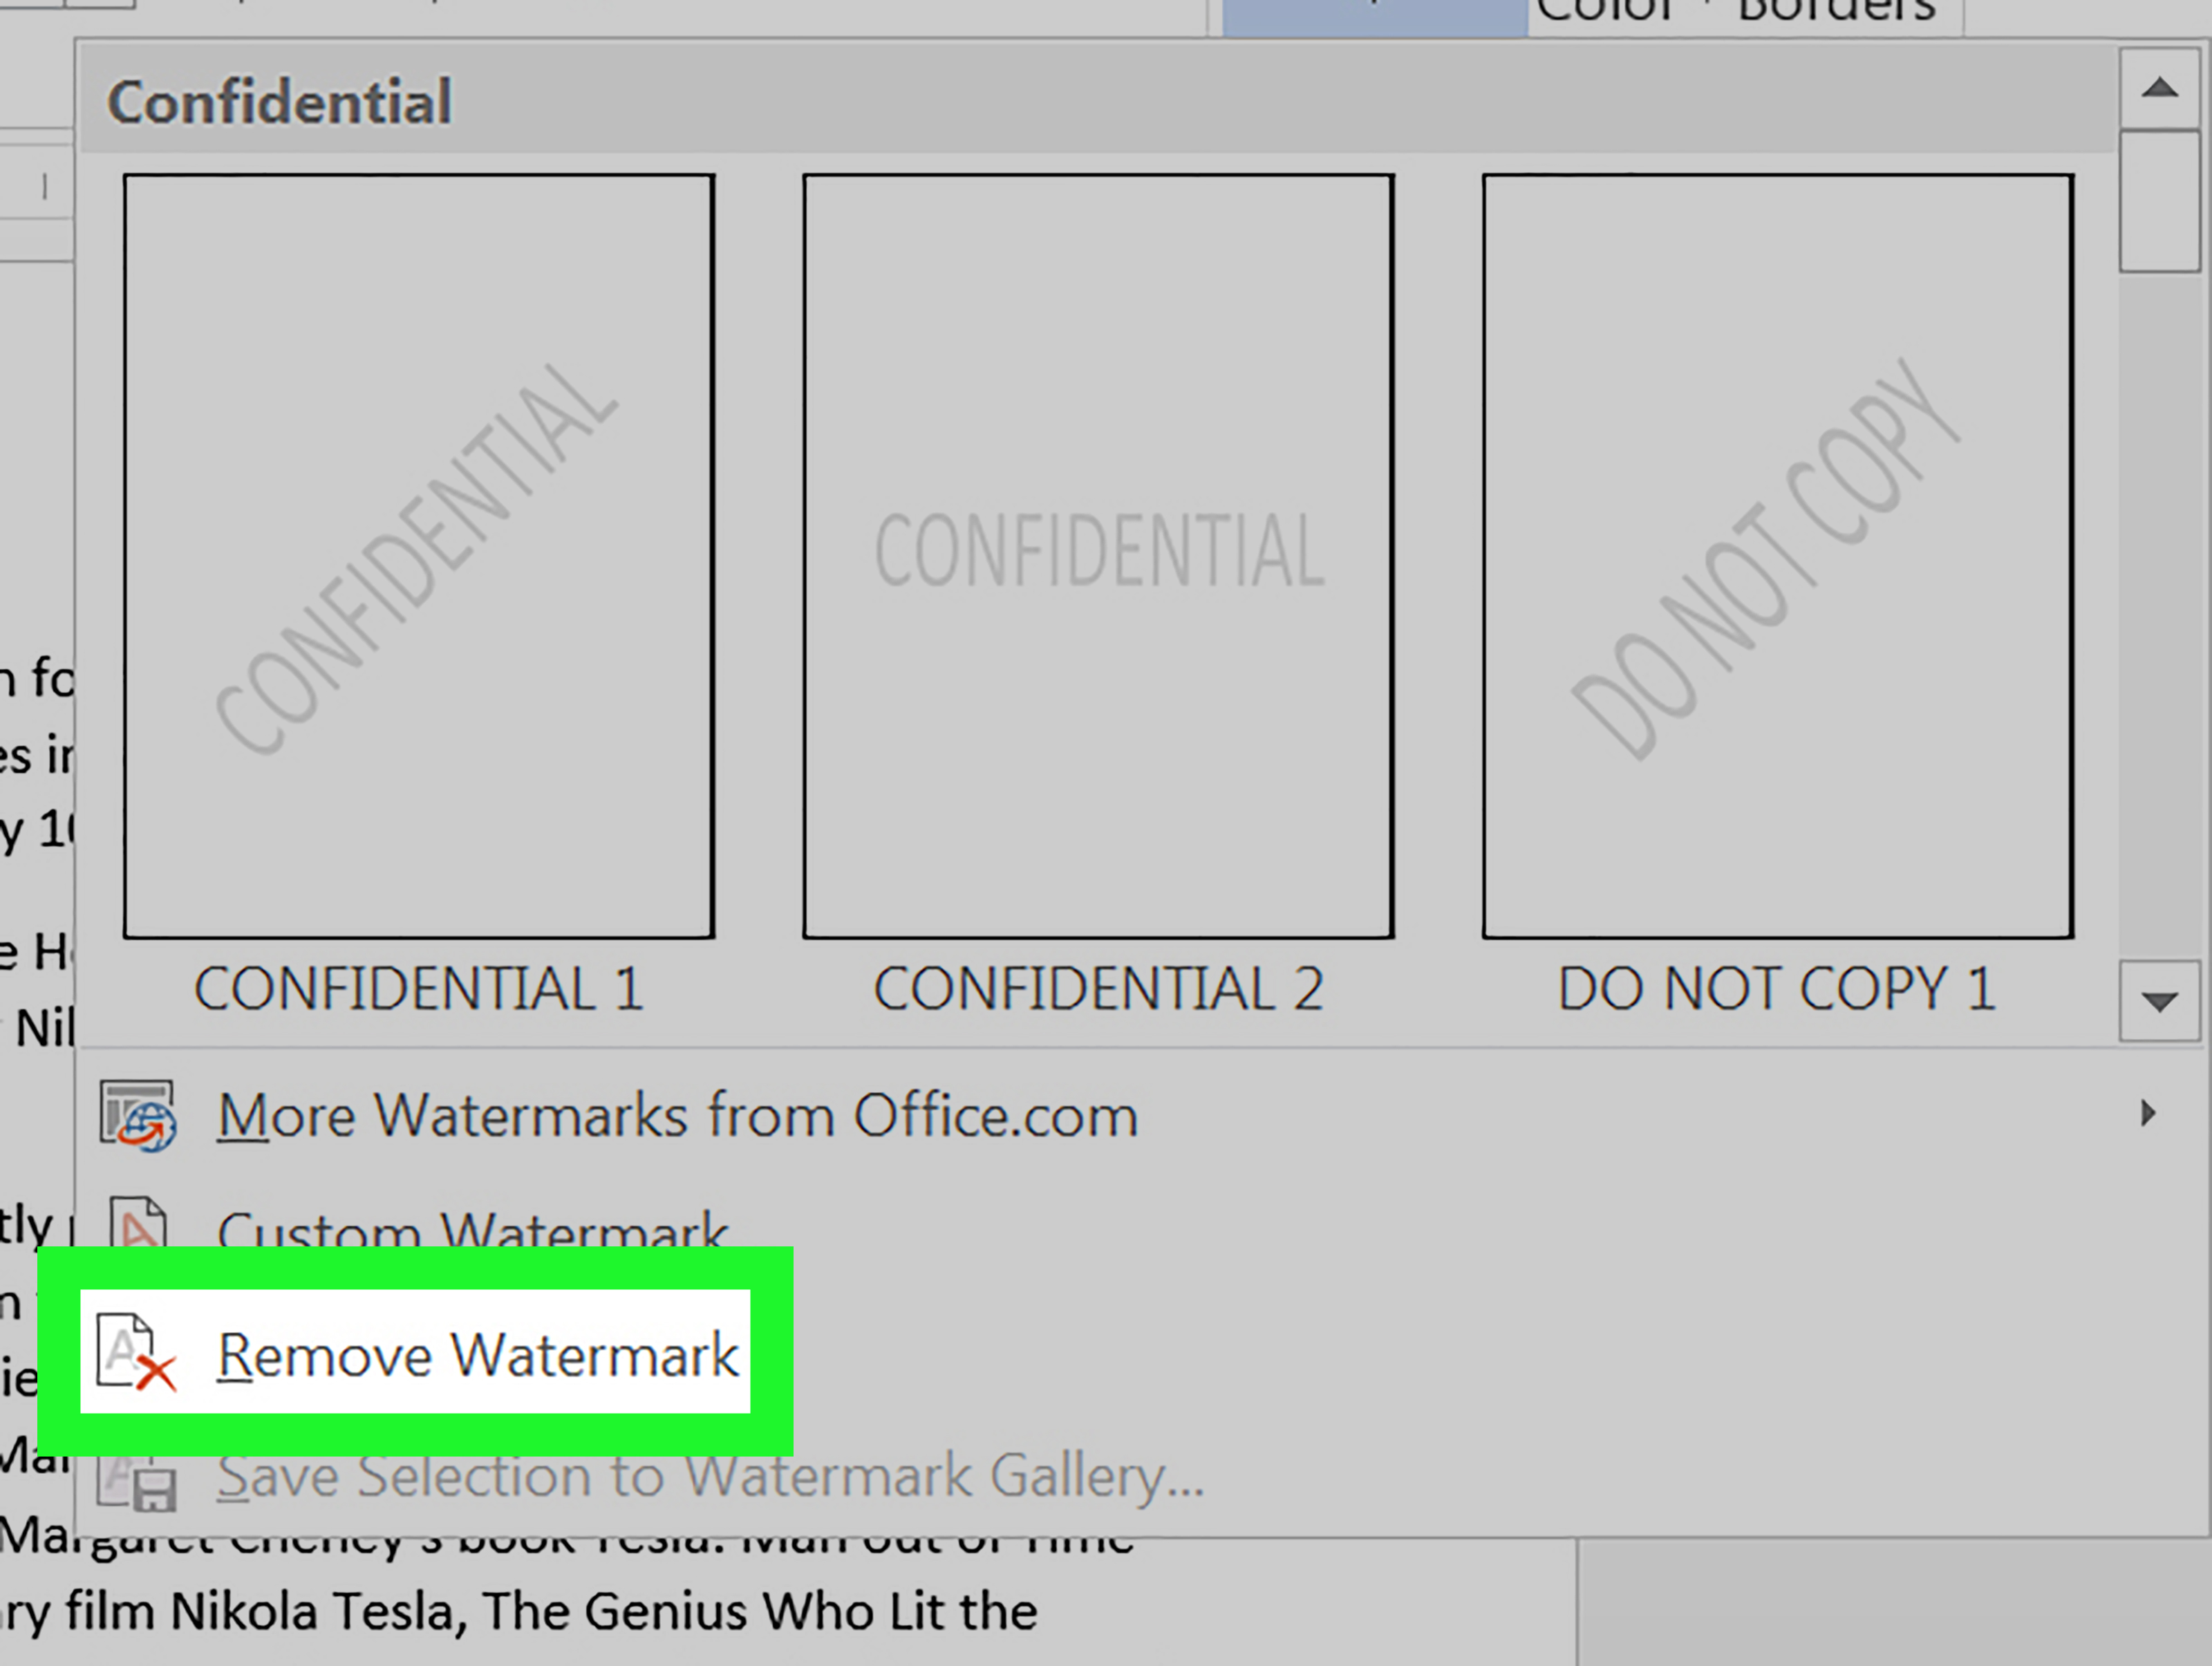 در تب Design روی Watermark کنید سپس از لیست آن گزینه Remove Watermark را انتخاب کنید تا واترمارک حذف شود.